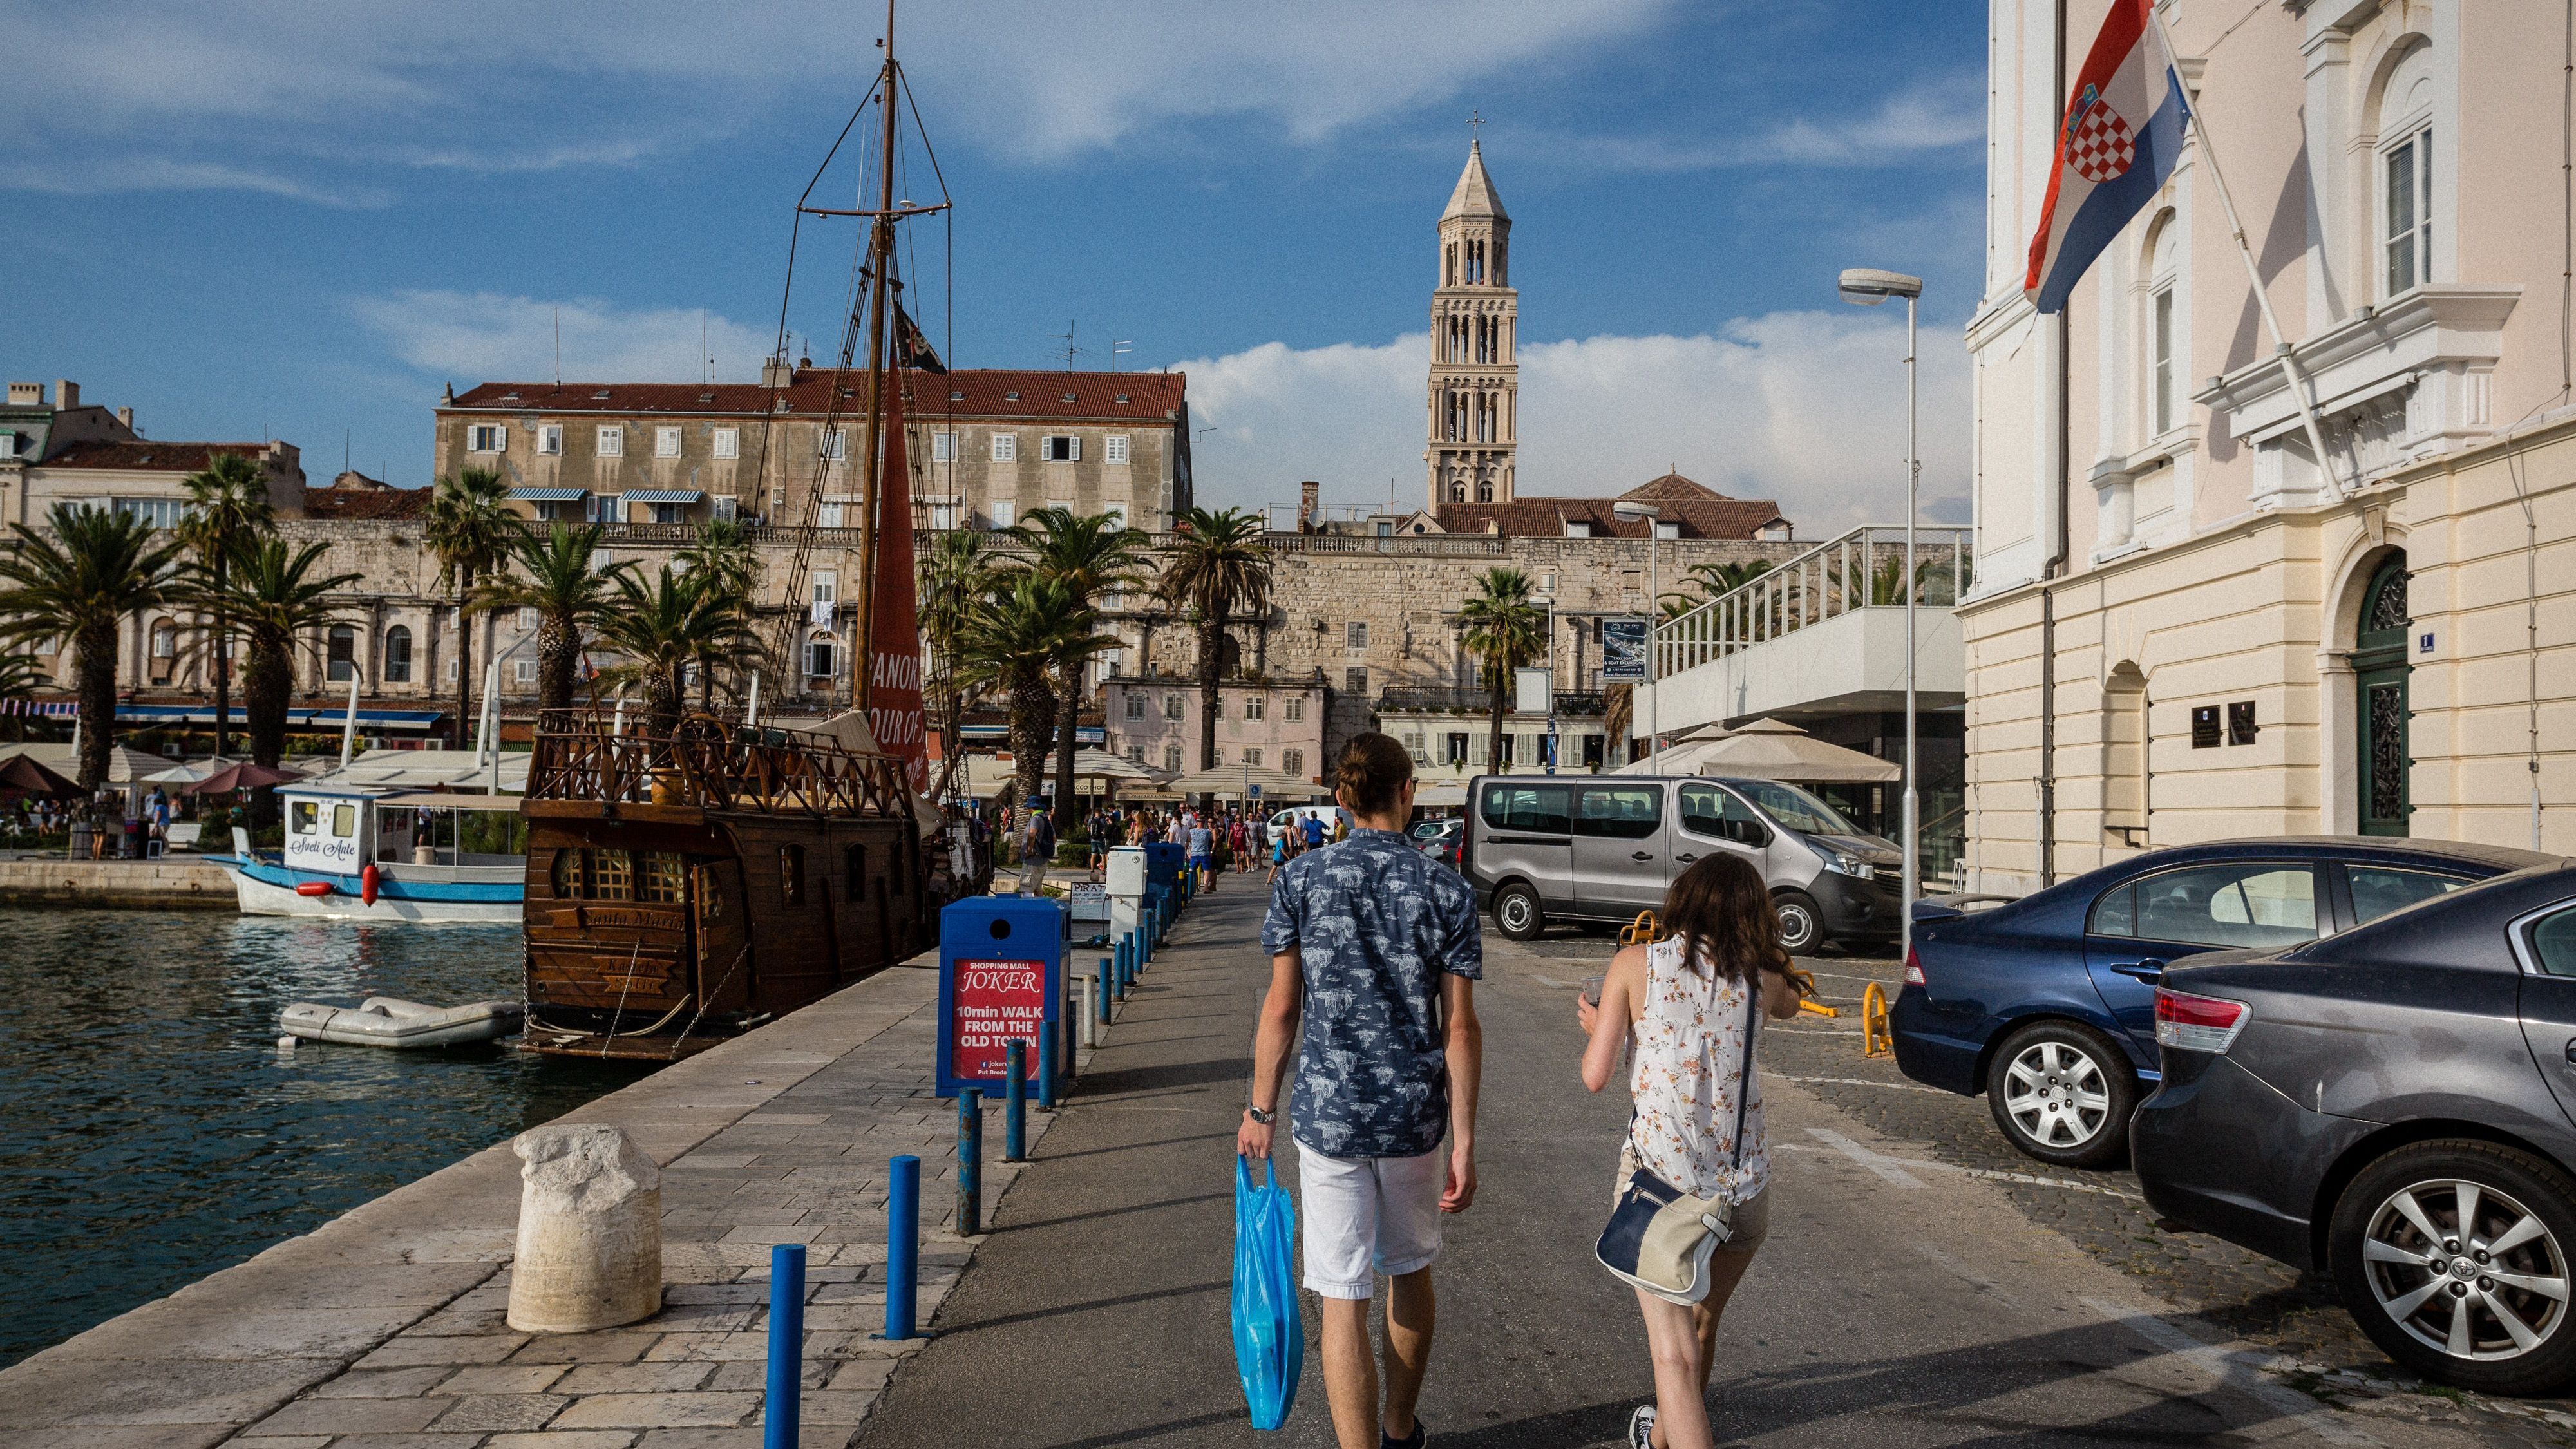  Zwei Touristen am Hafen in Split, Kroatien. Das Land ist dieses Jahr als Reiseziel im Trend.